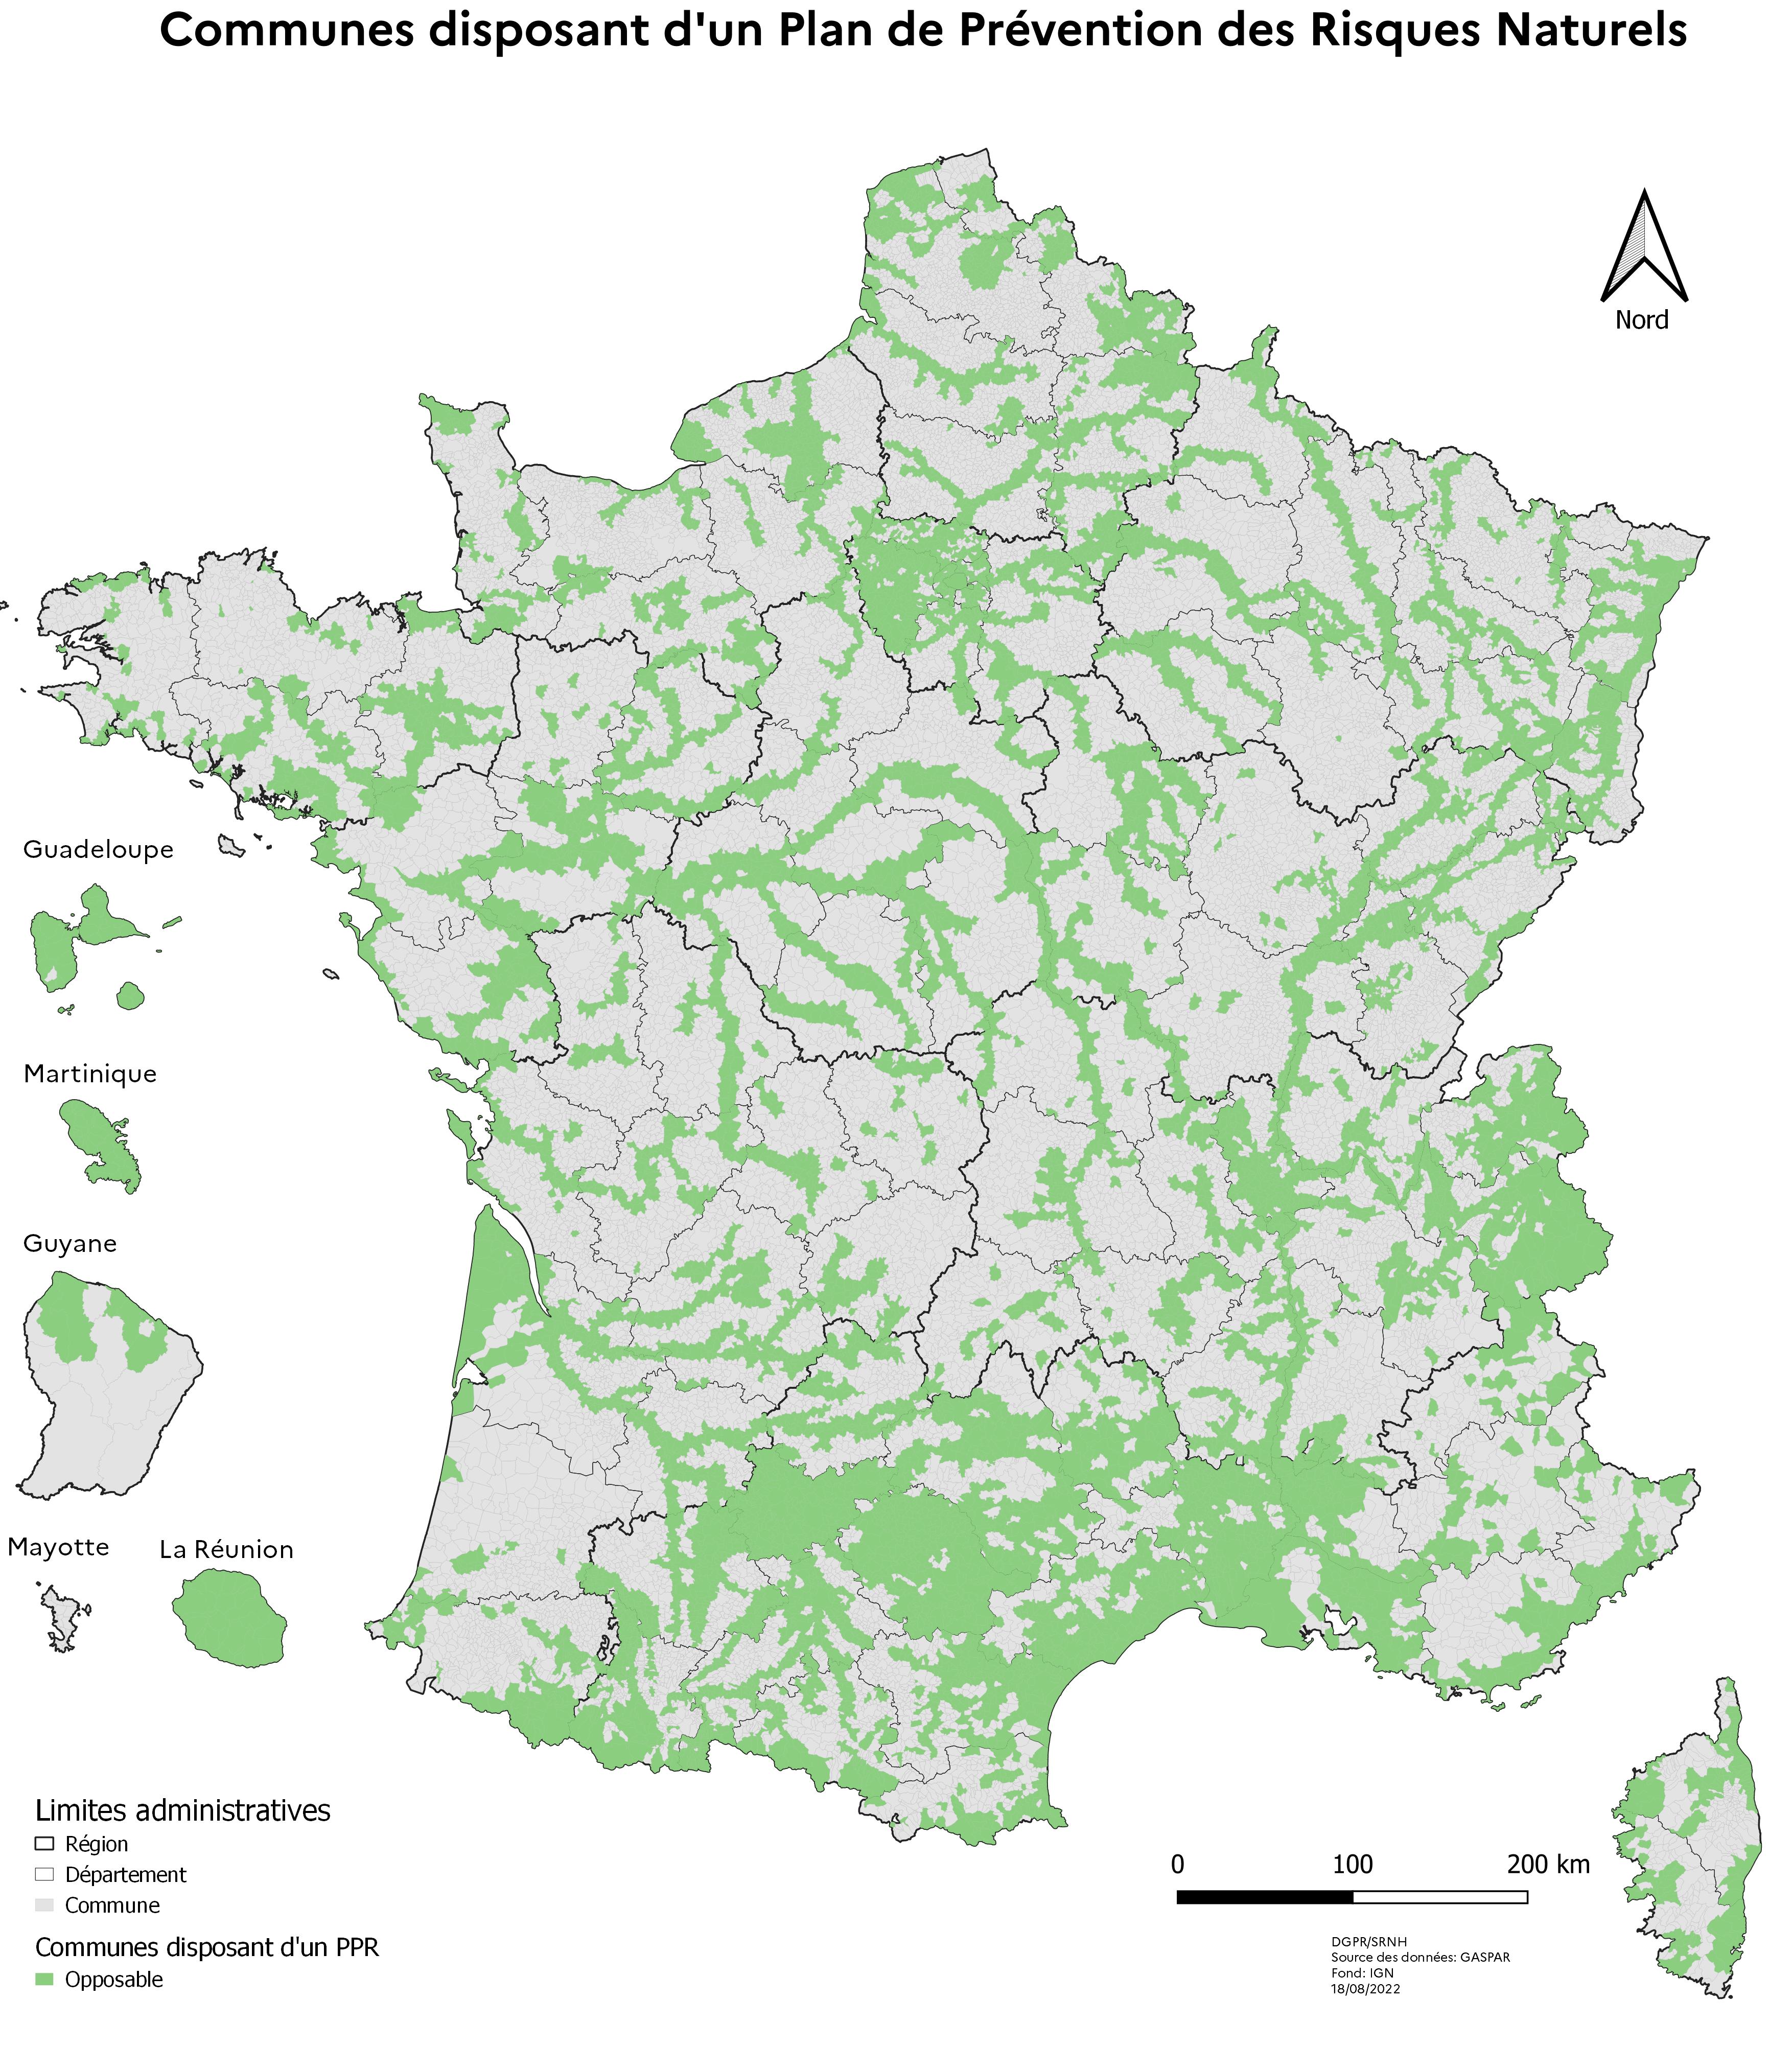 Carte des communes disposant en France d’un plan de prévention des risques naturels (PPRN) opposables. Celles-ci longent majoritairement les cours d’eau et le littoral, quand elles ne sont pas dans le sud de la France ou sur les îles volcaniques d’Outre-mer.